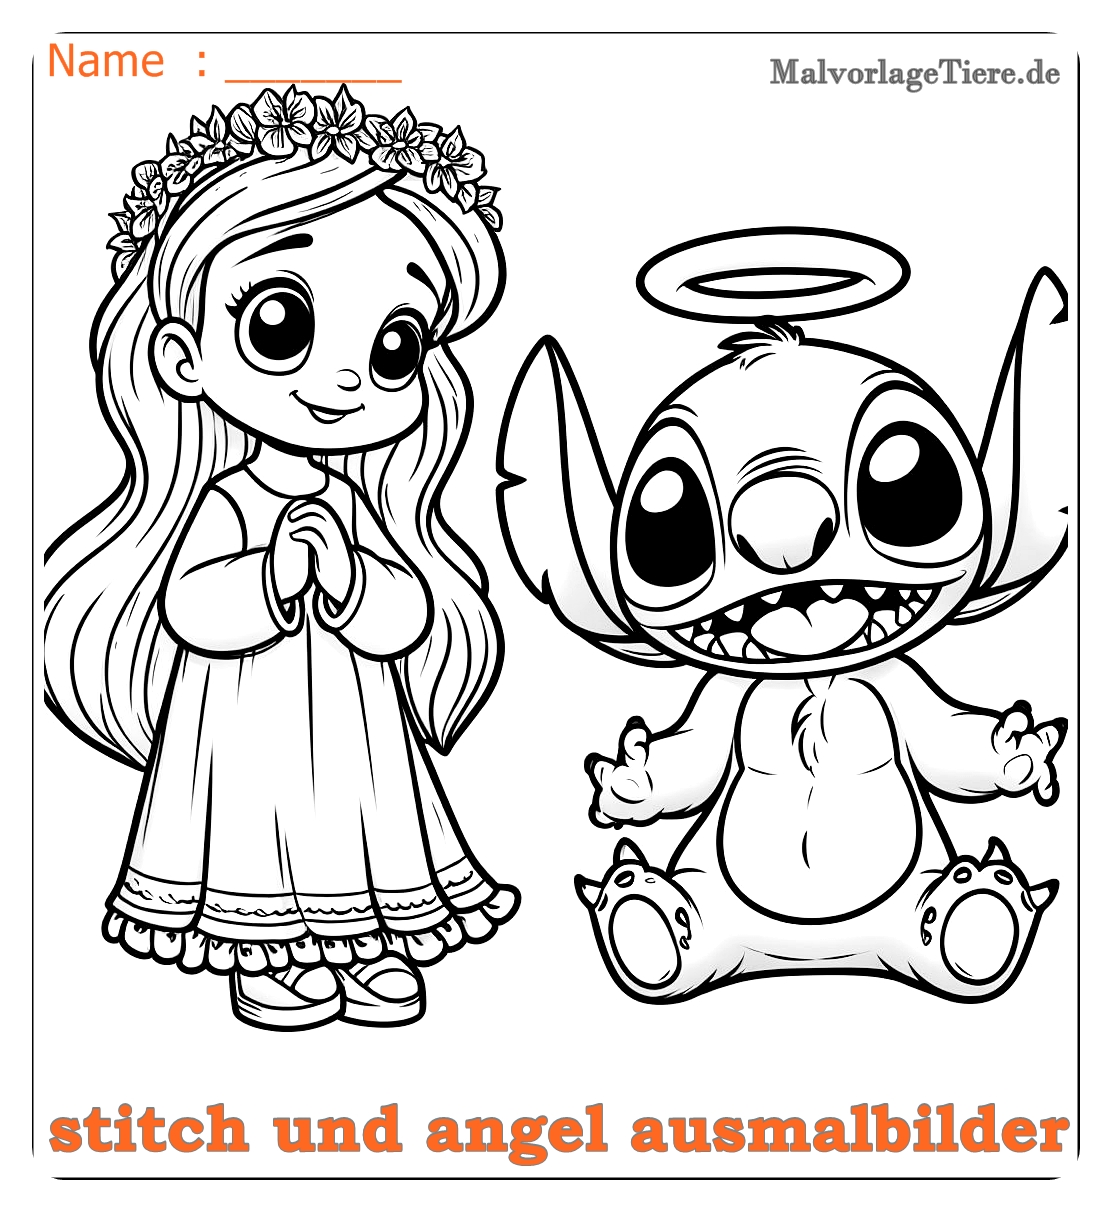 stitch und angel ausmalbilder02 by malvorlagetiere.de